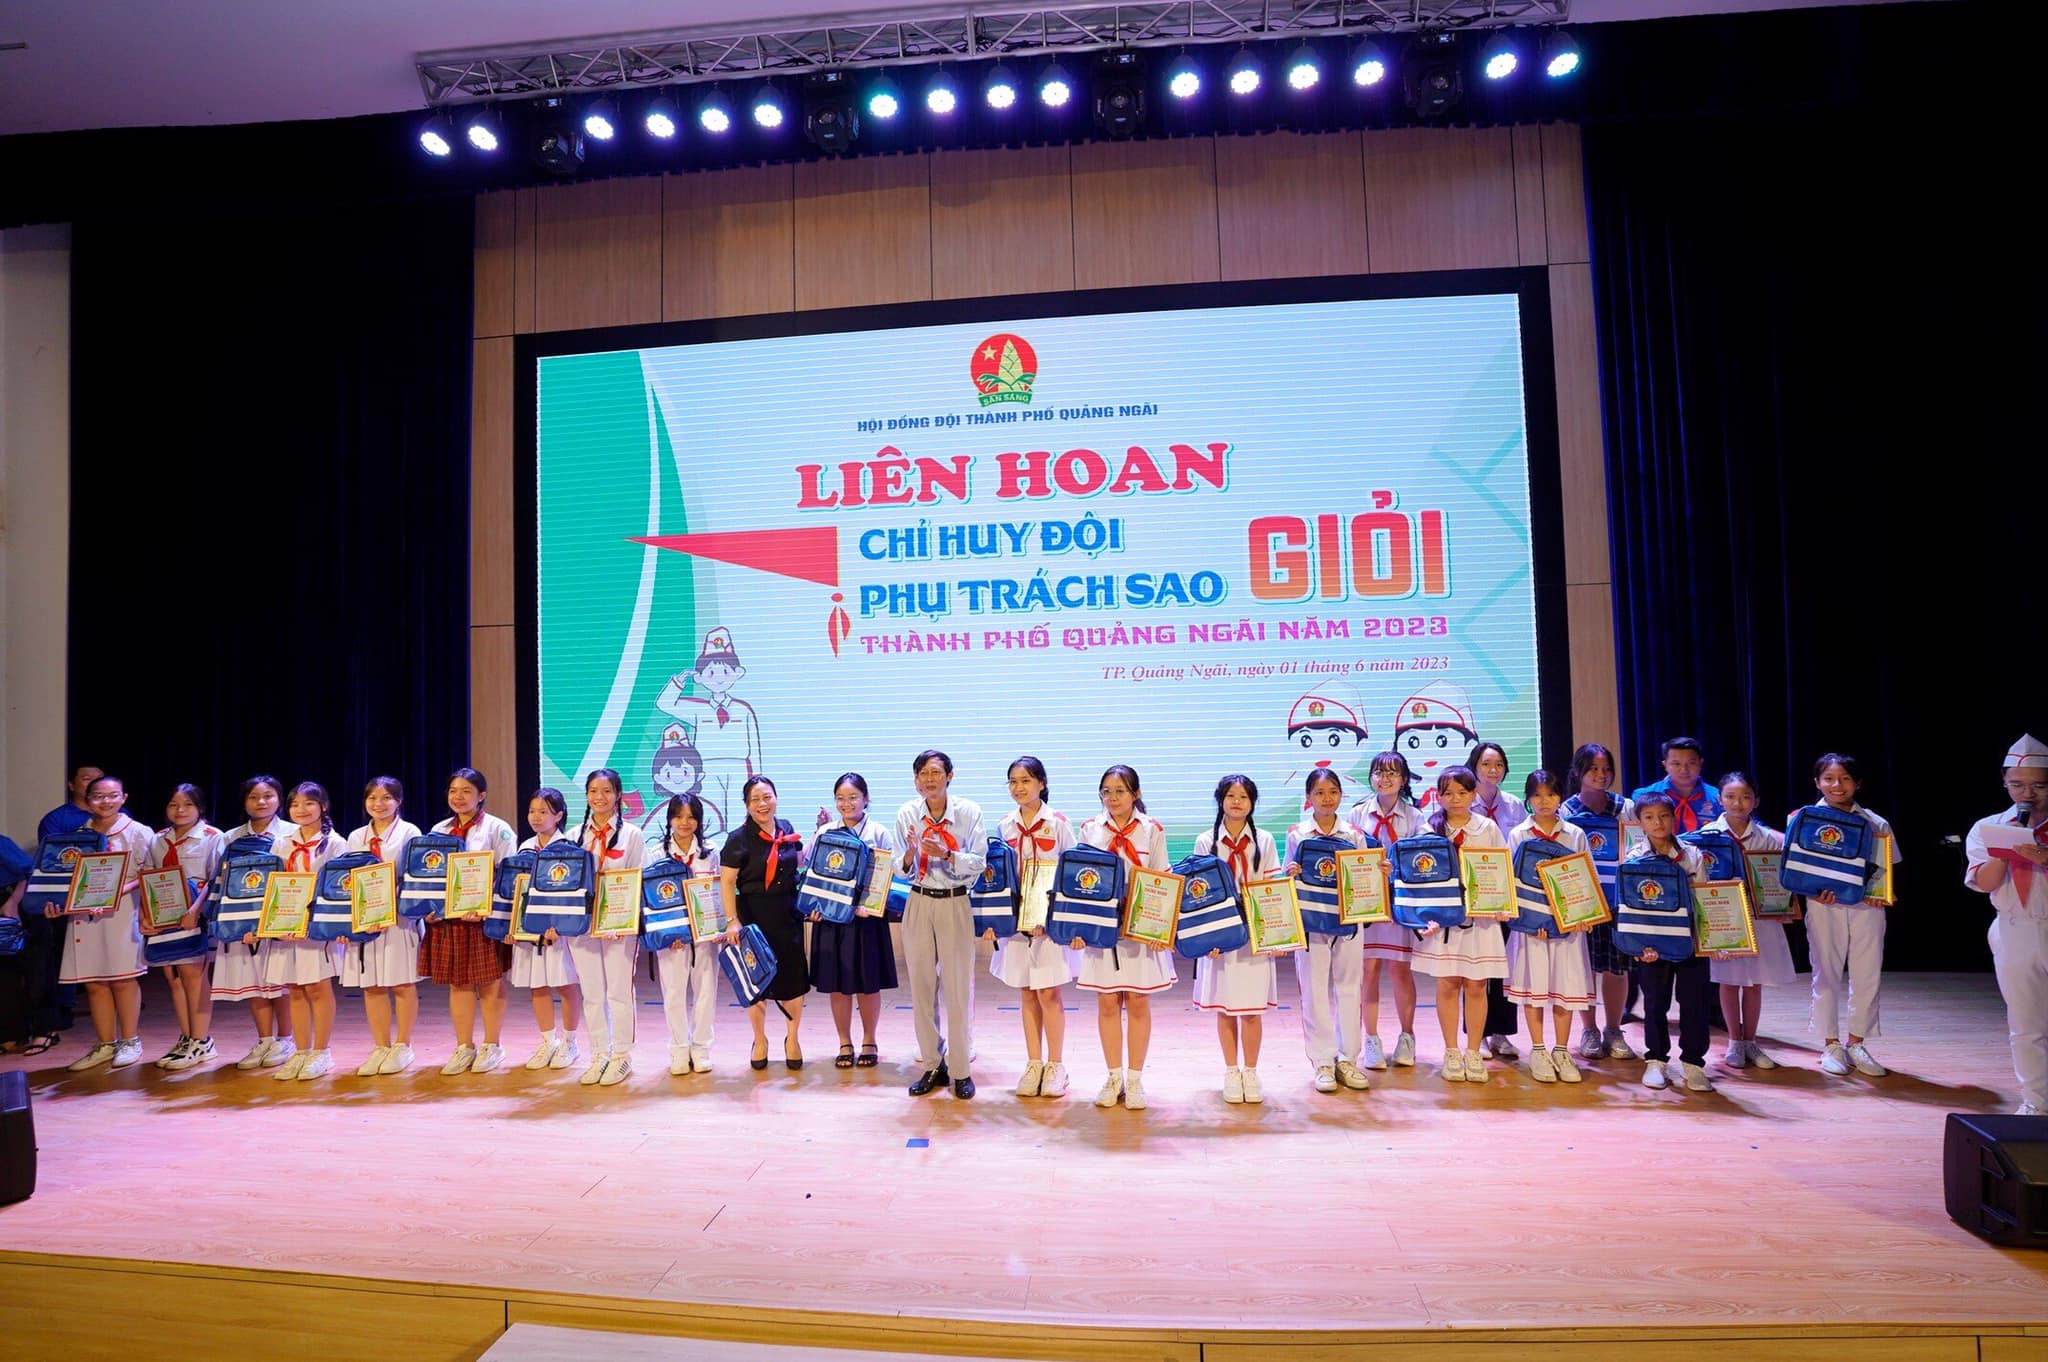 Hội đồng Đội thành phố Quảng Ngãi đã tổ chức Liên hoan Chỉ huy Đội giỏi, Phụ trách Sao giỏi thành phố Quảng Ngãi năm 2023